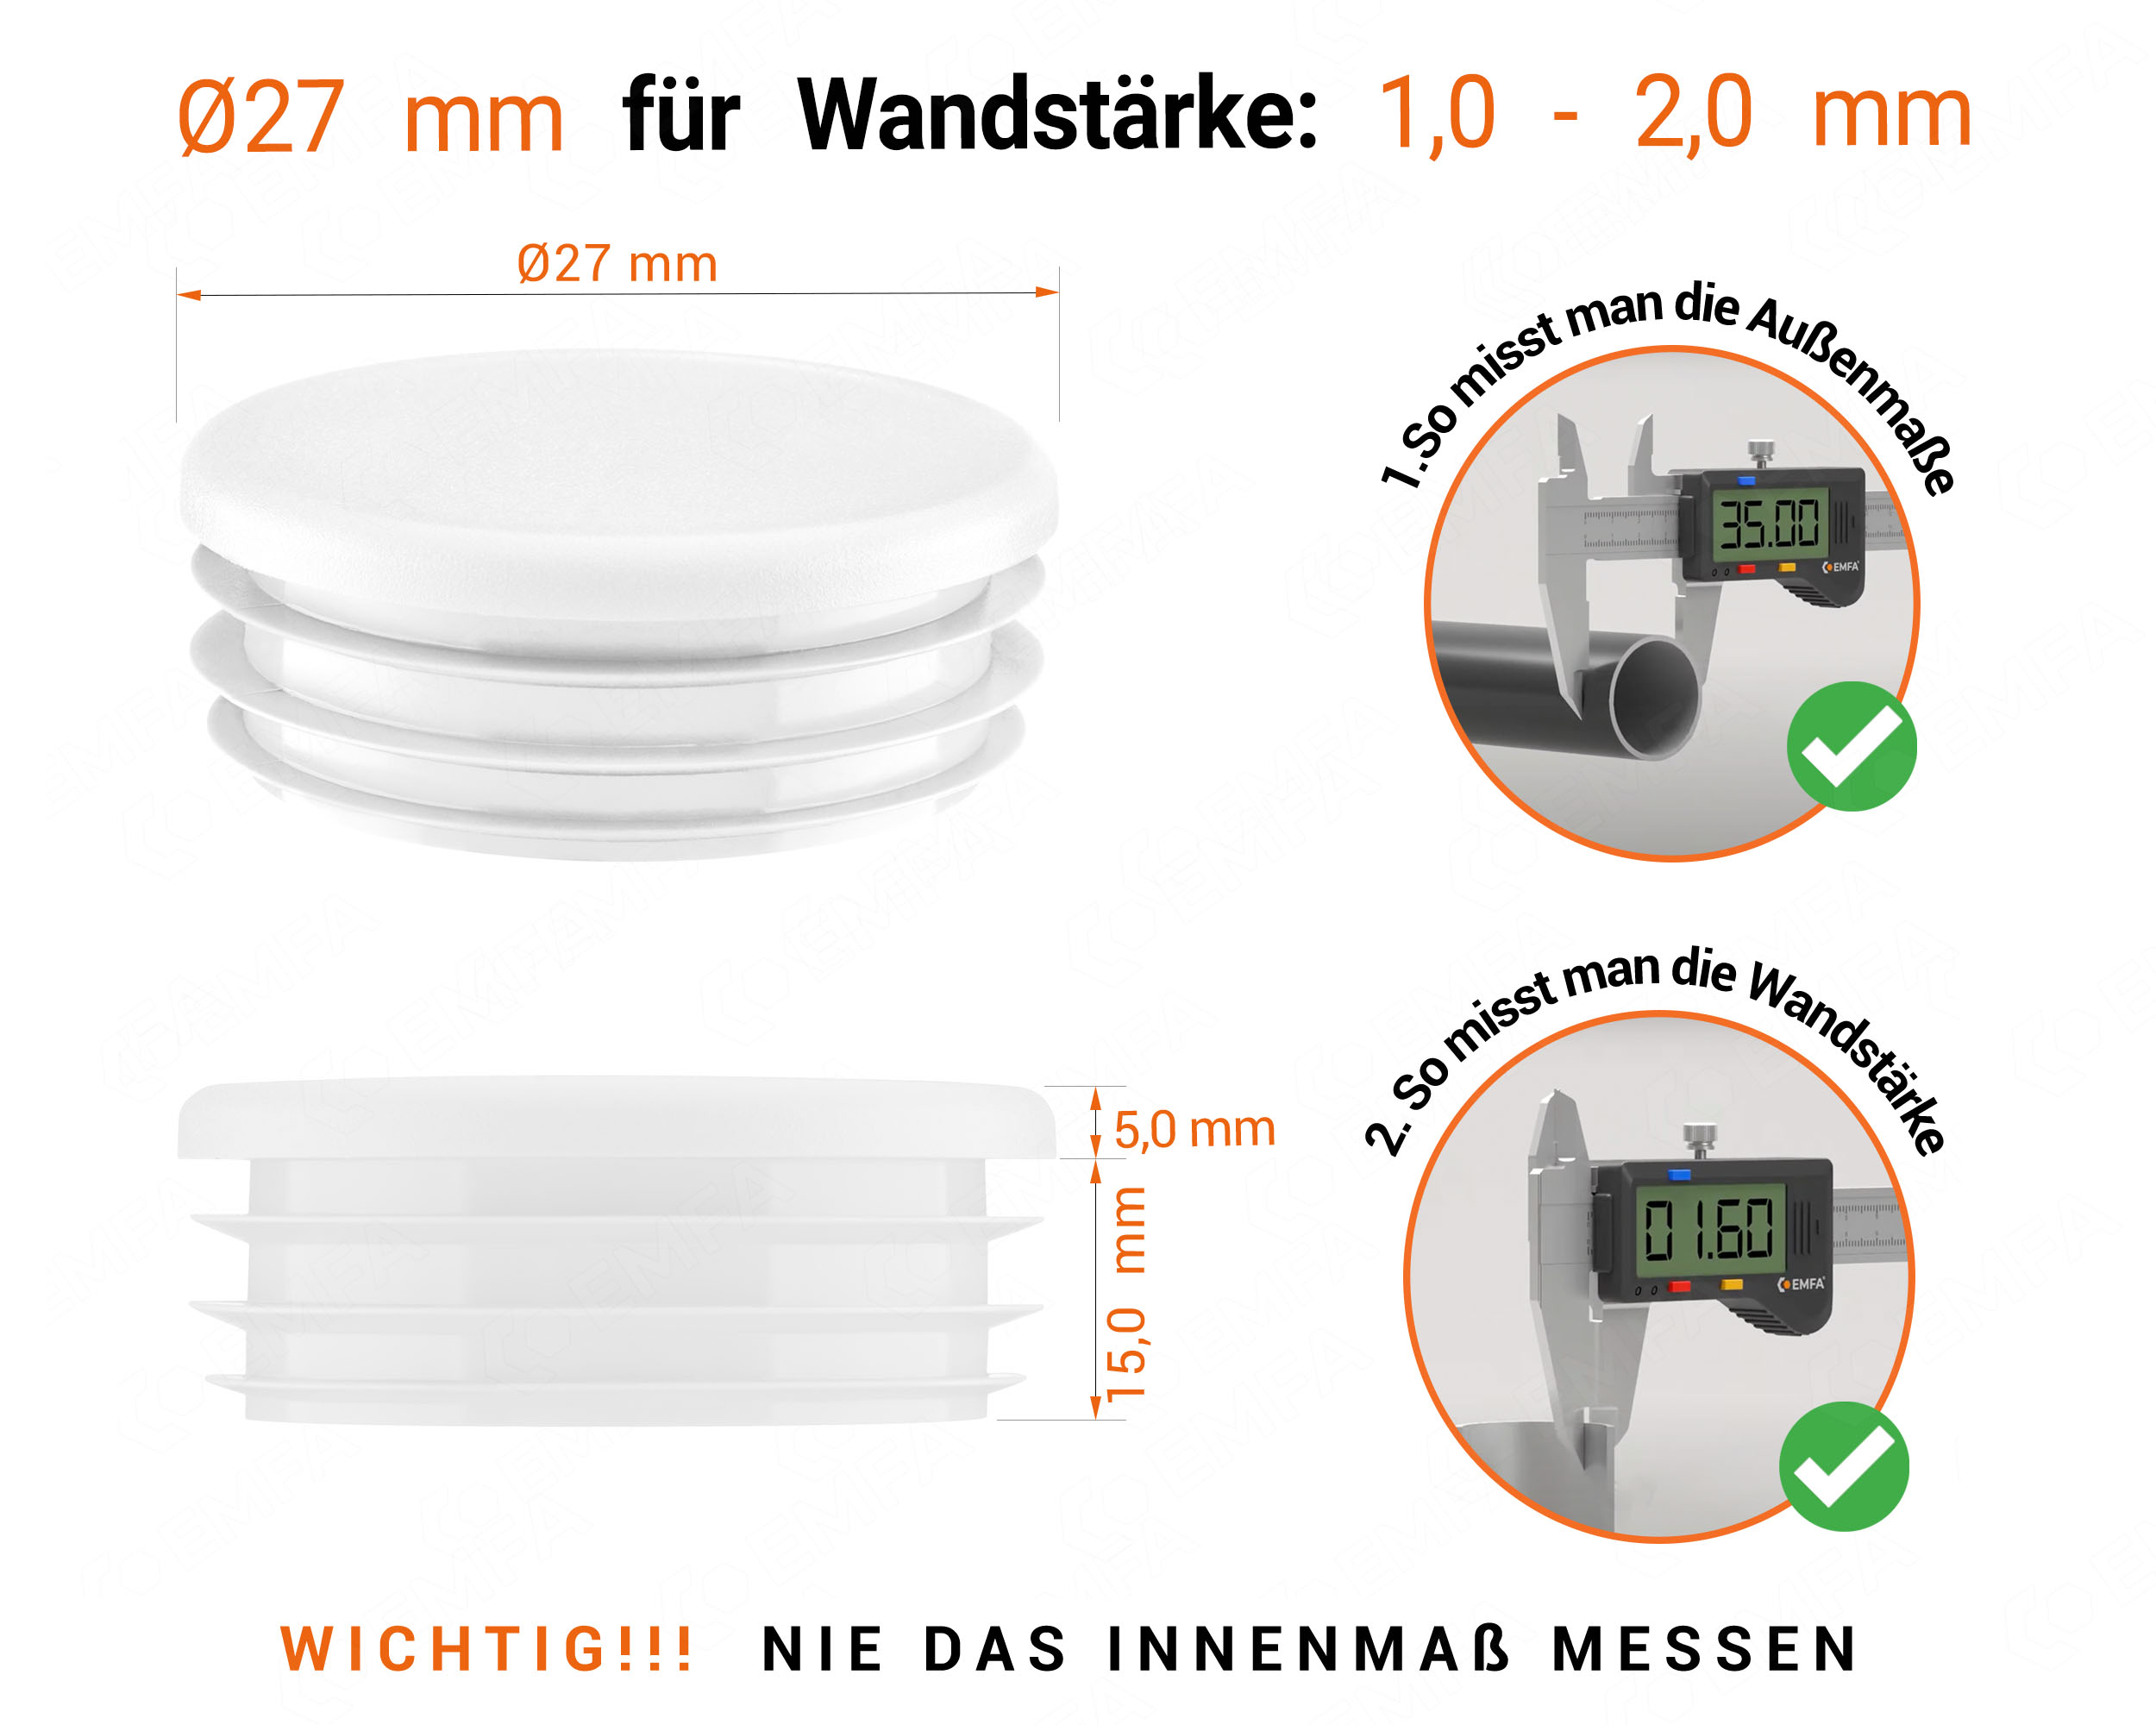 Weiße Endkappe für Rundrohre in der Größe 27 mm mit technischen Abmessungen und Anleitung für korrekte Messung